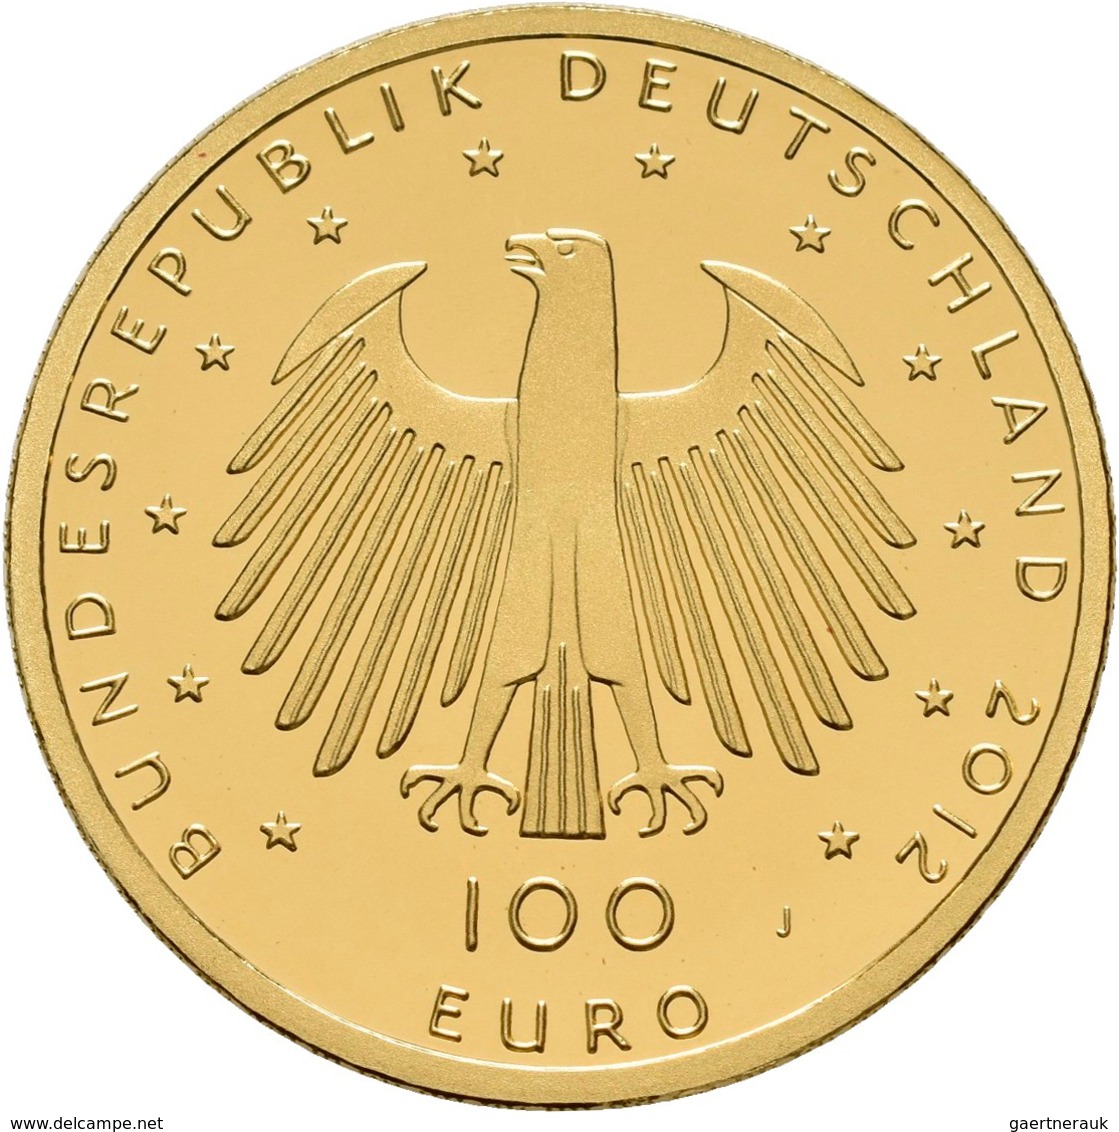 Deutschland - Anlagegold: 5 x 100 Euro 2012 Dom zu Aachen (A,D,F,J,J), in Originalkapsel und Etui, m